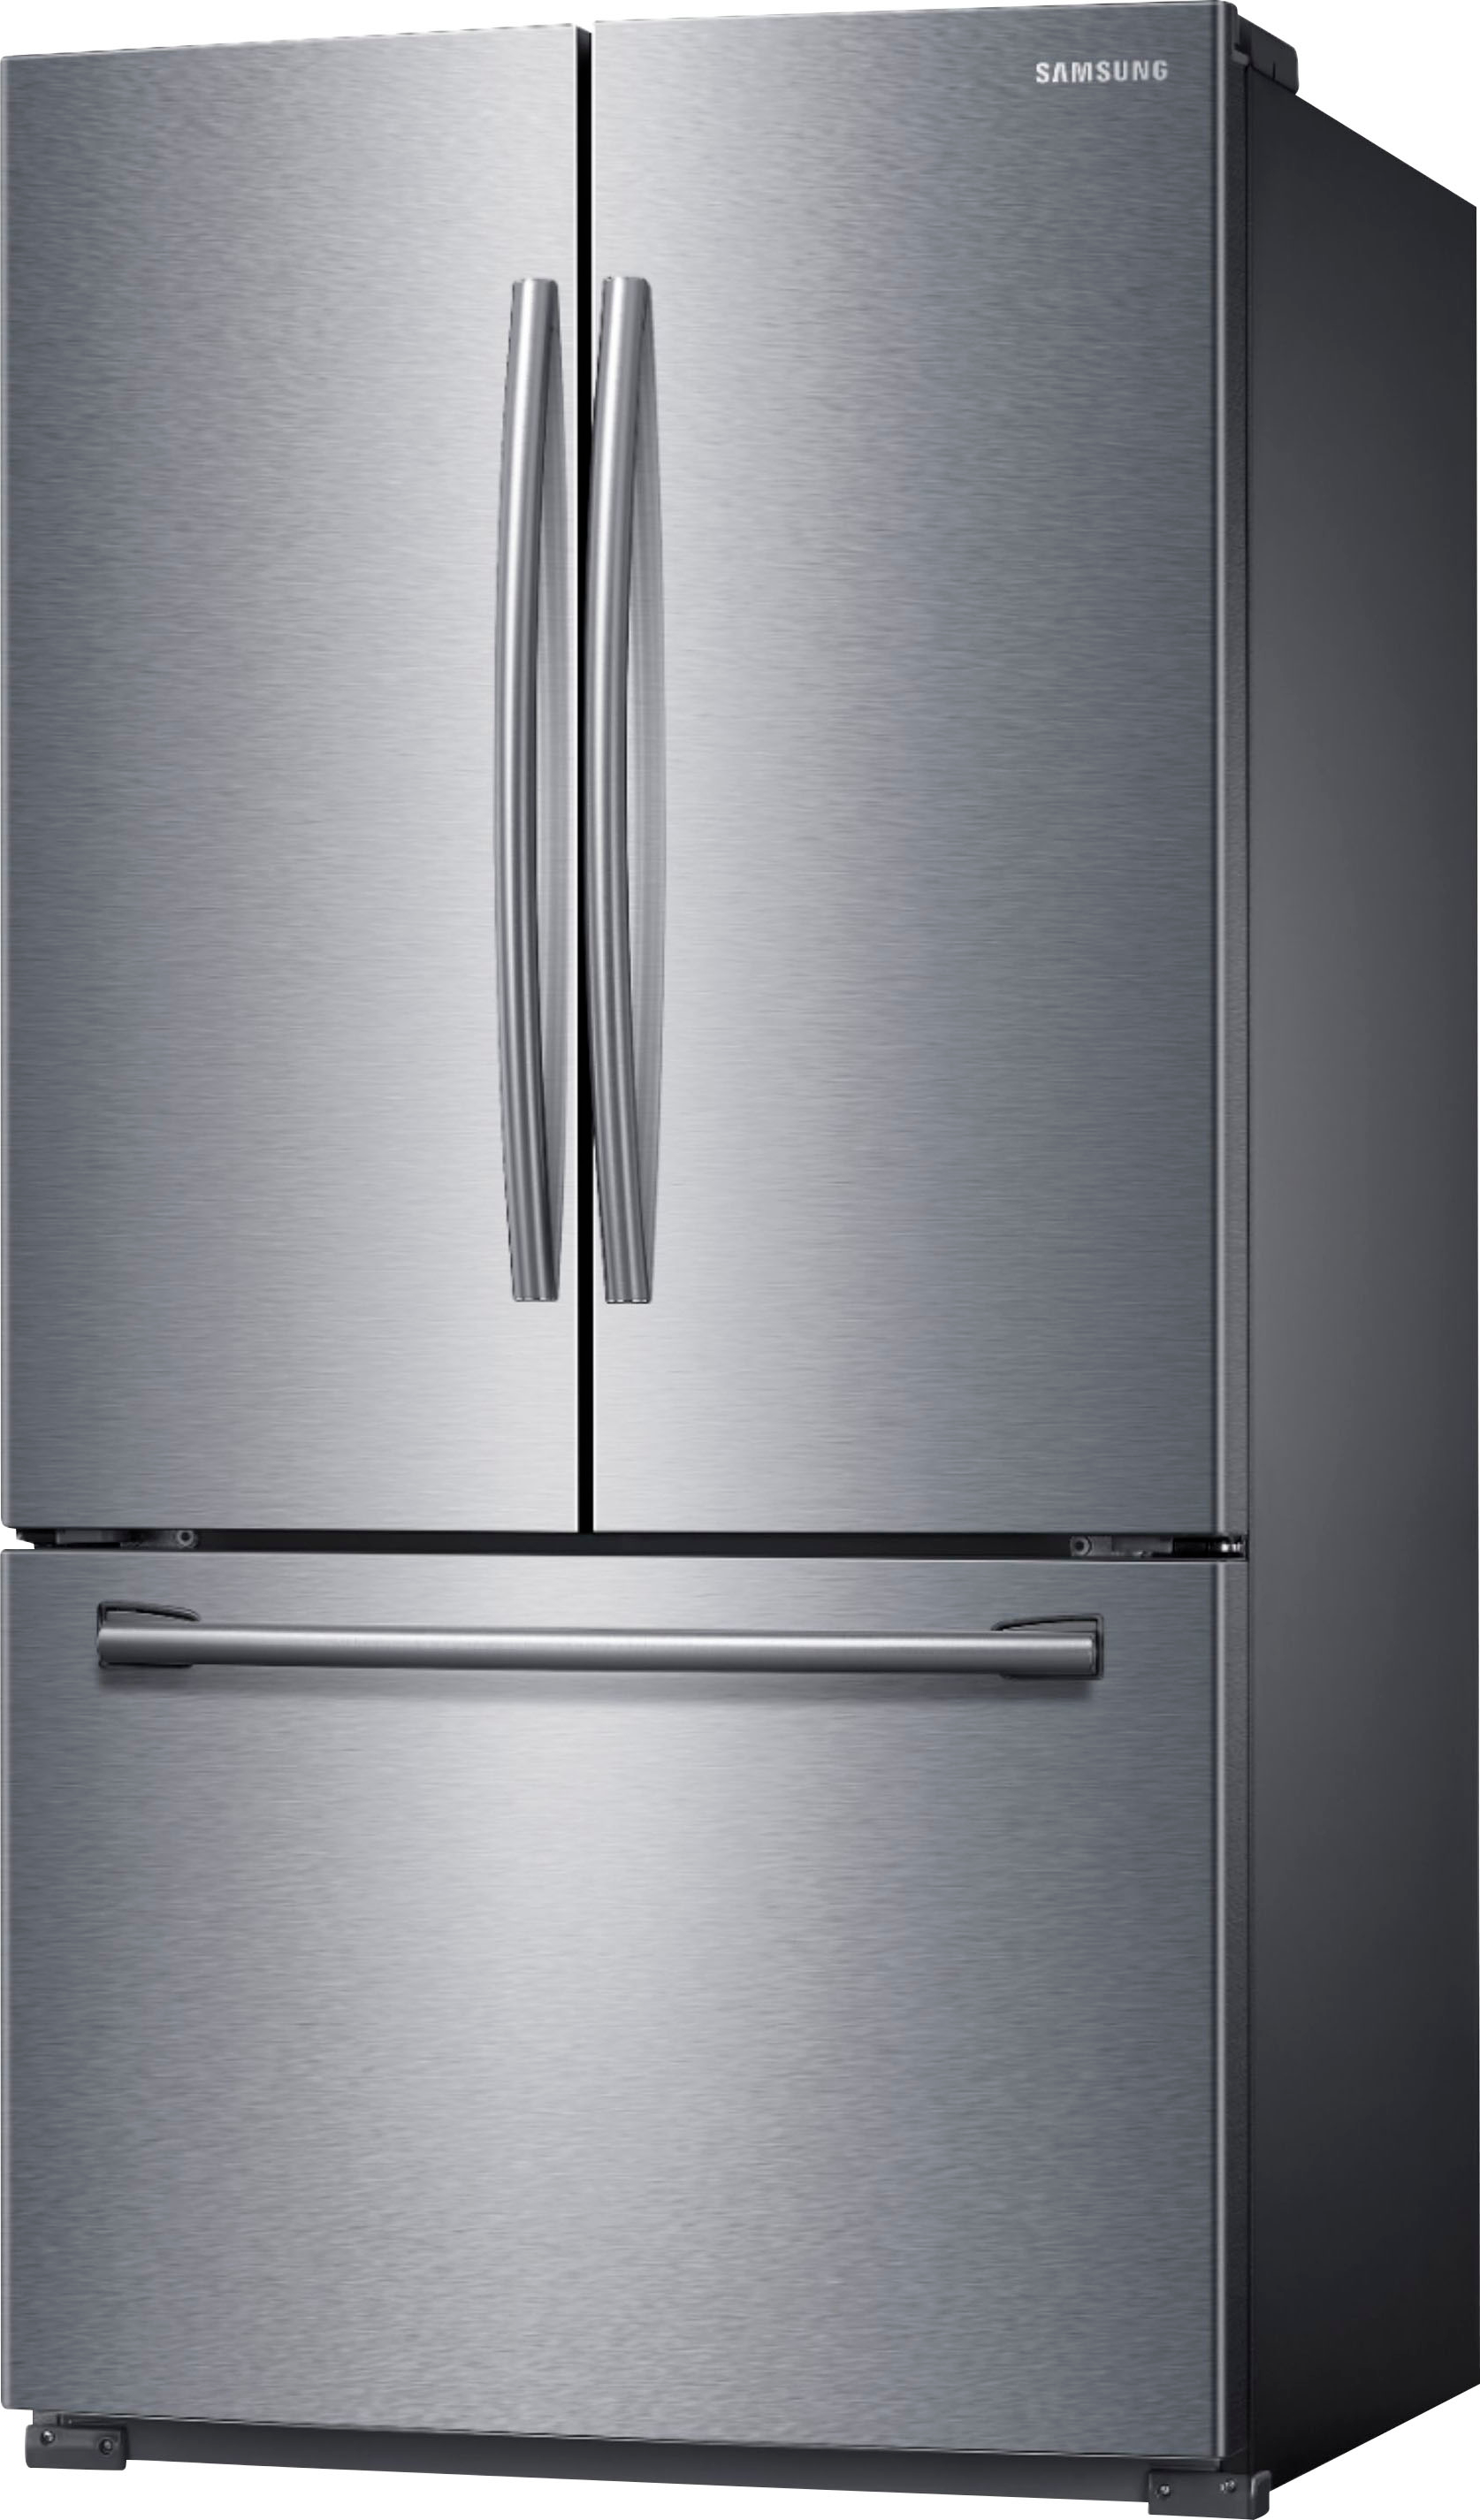 Samsung Filter Refrigerator